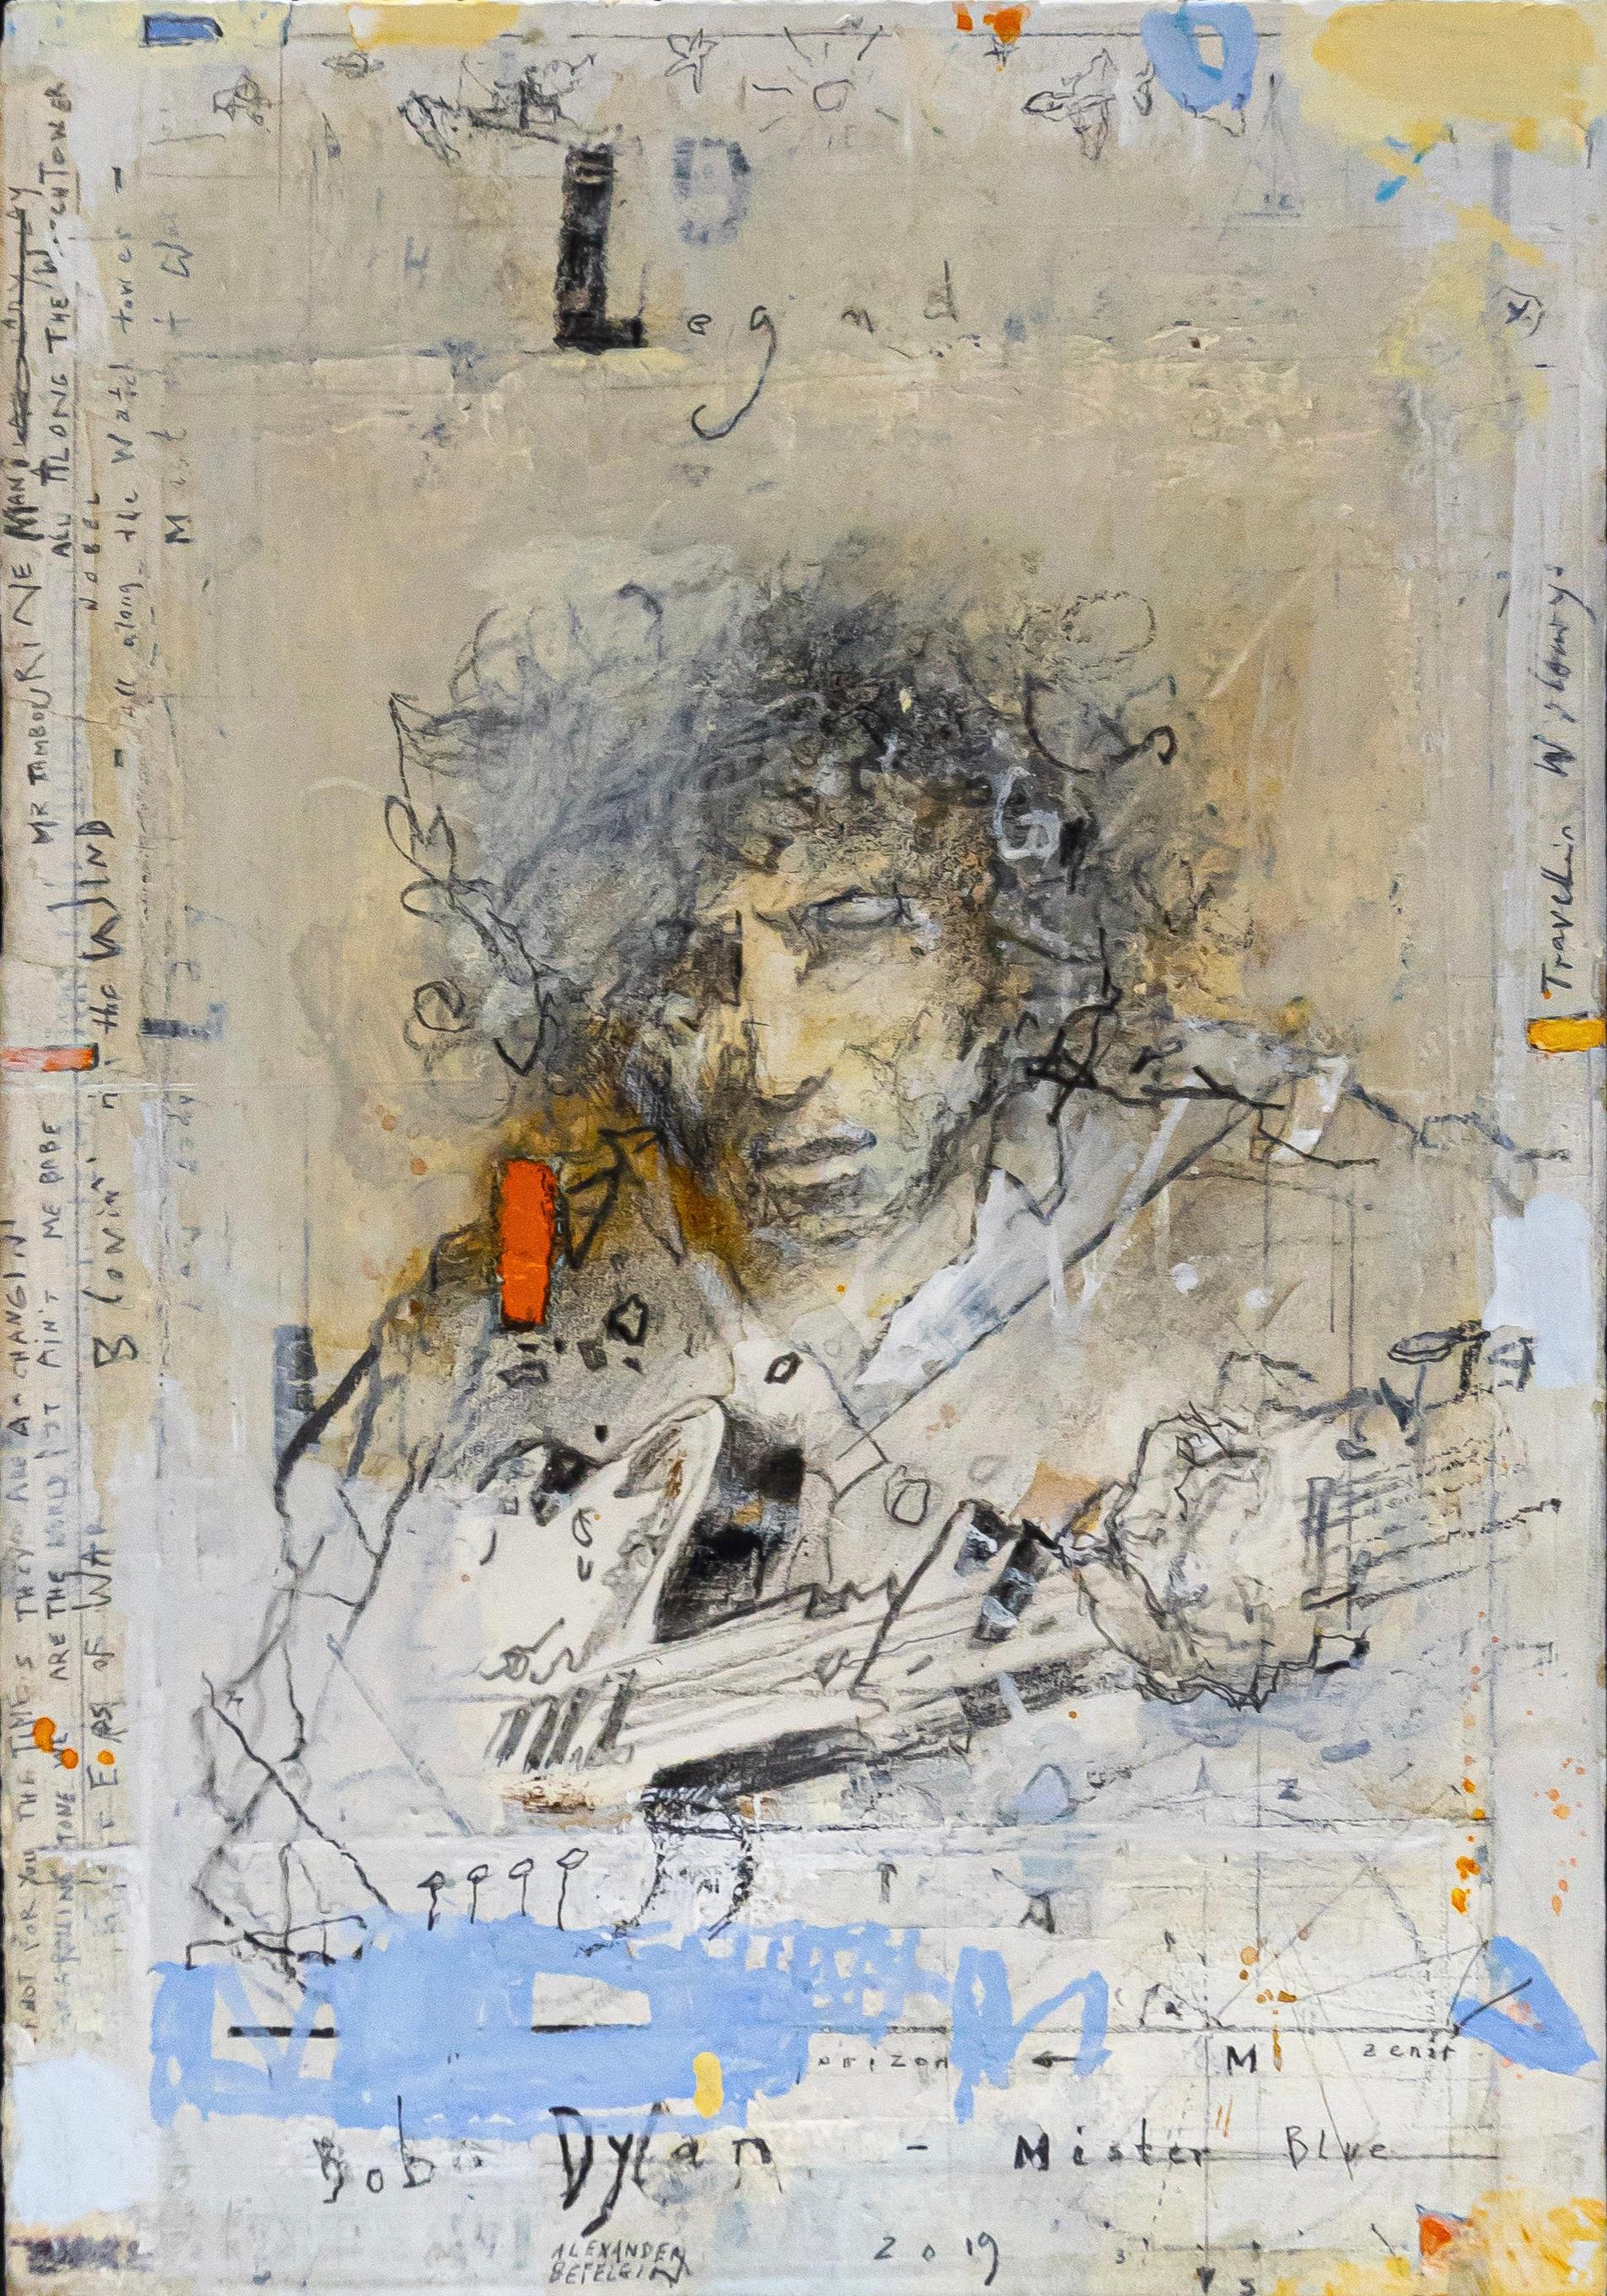 Portrait Alexander Befelein - « Bob Dylan - Legends » 2019 aquarelle sur papier - musique de guitare de musicien